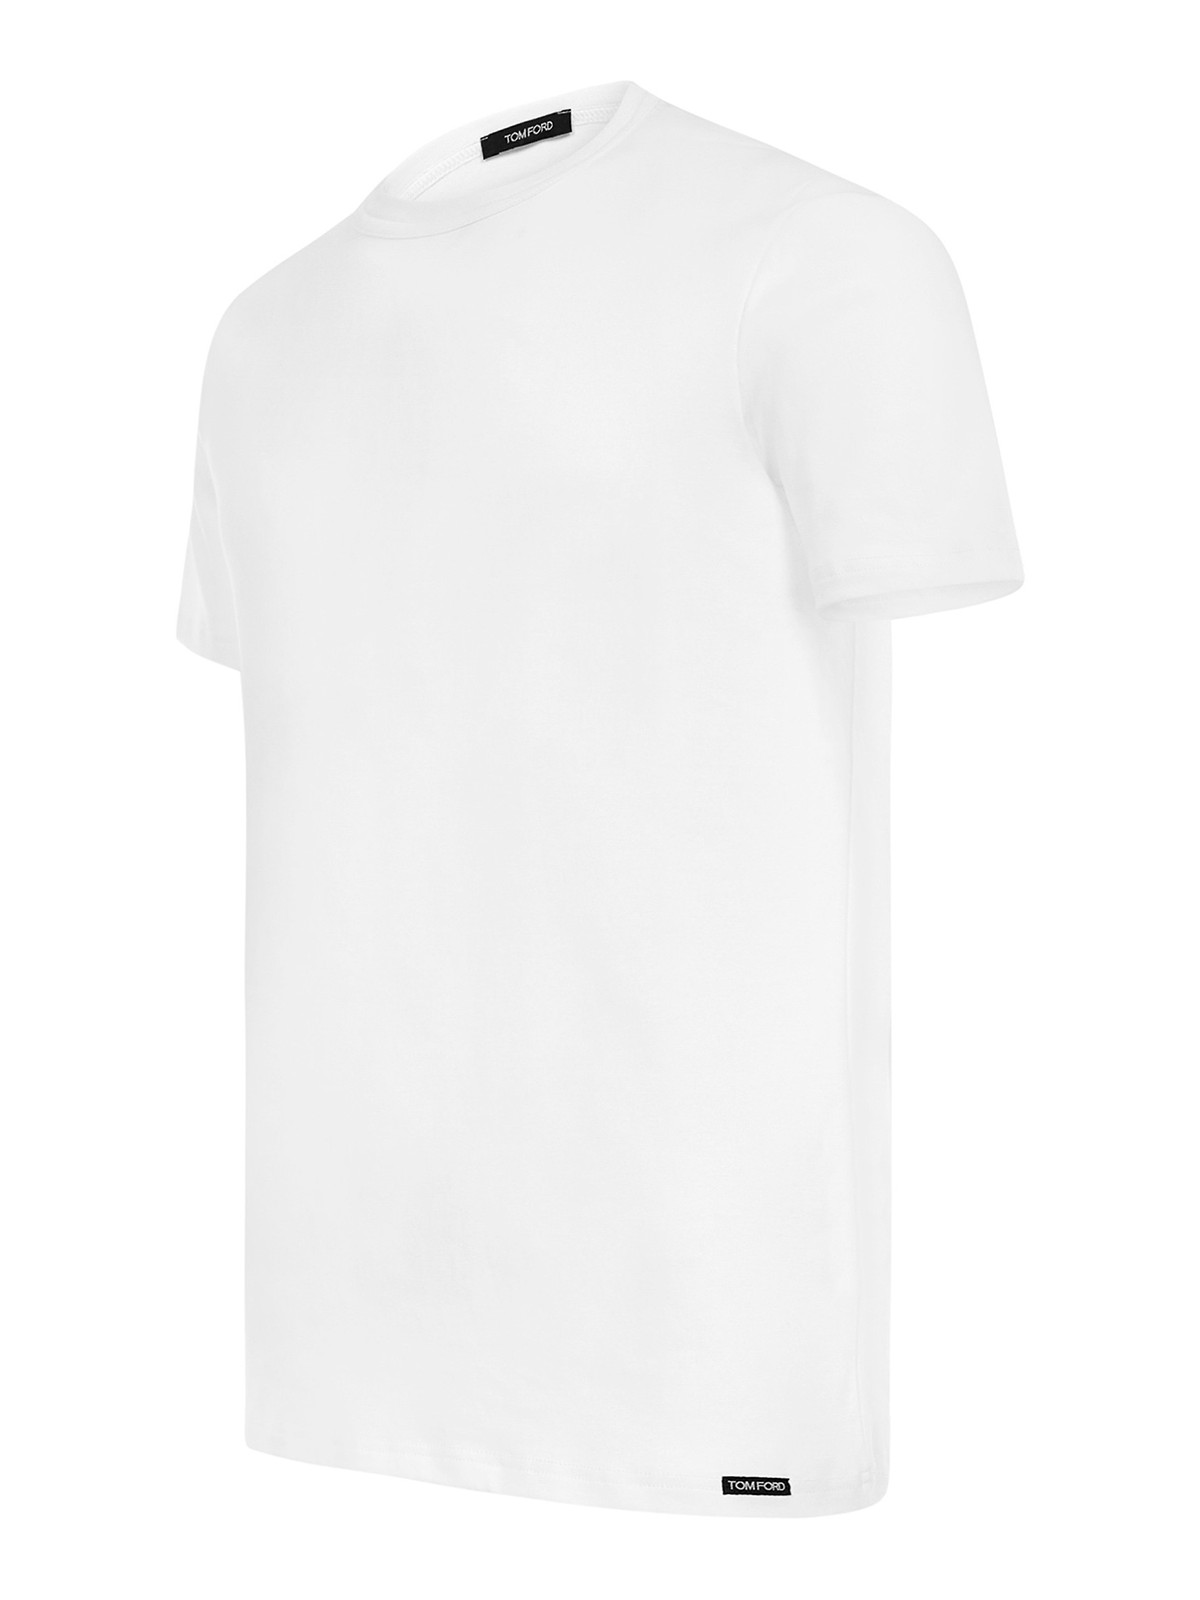 Shop Tom Ford Camiseta - Blanco In White